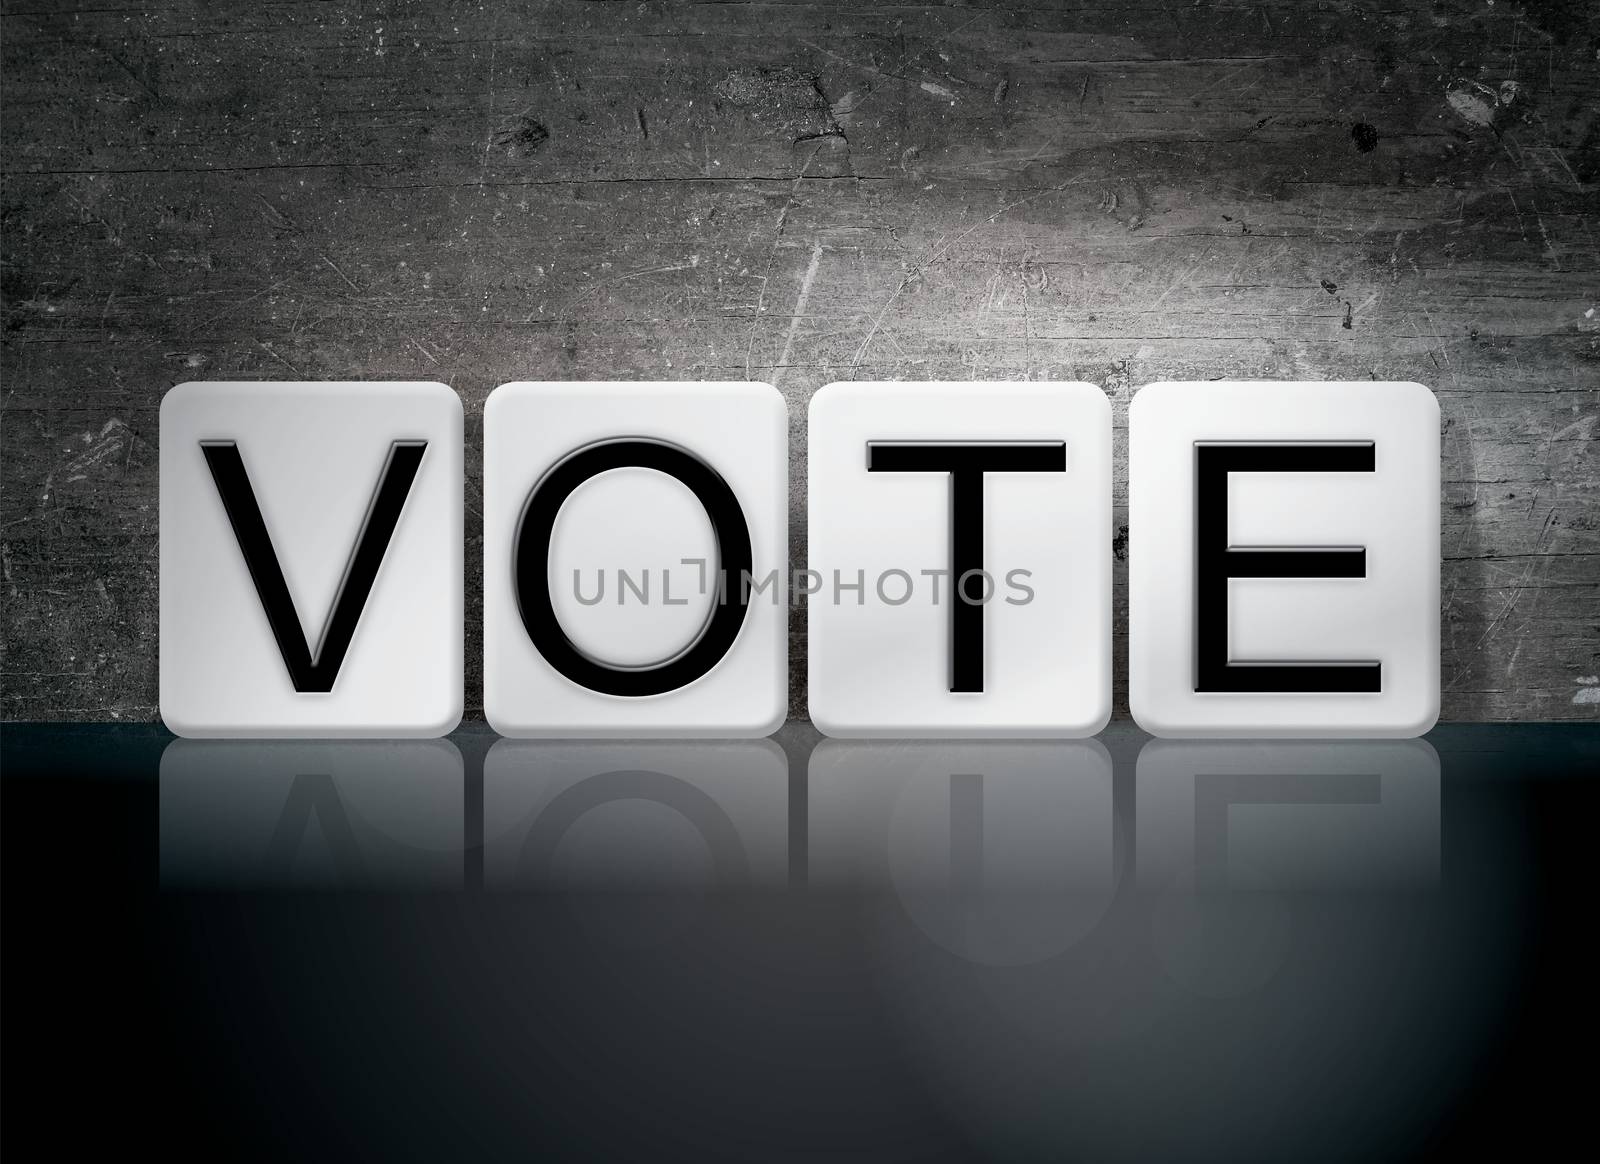 The word "Vote" written in white tiles against a dark vintage grunge background.